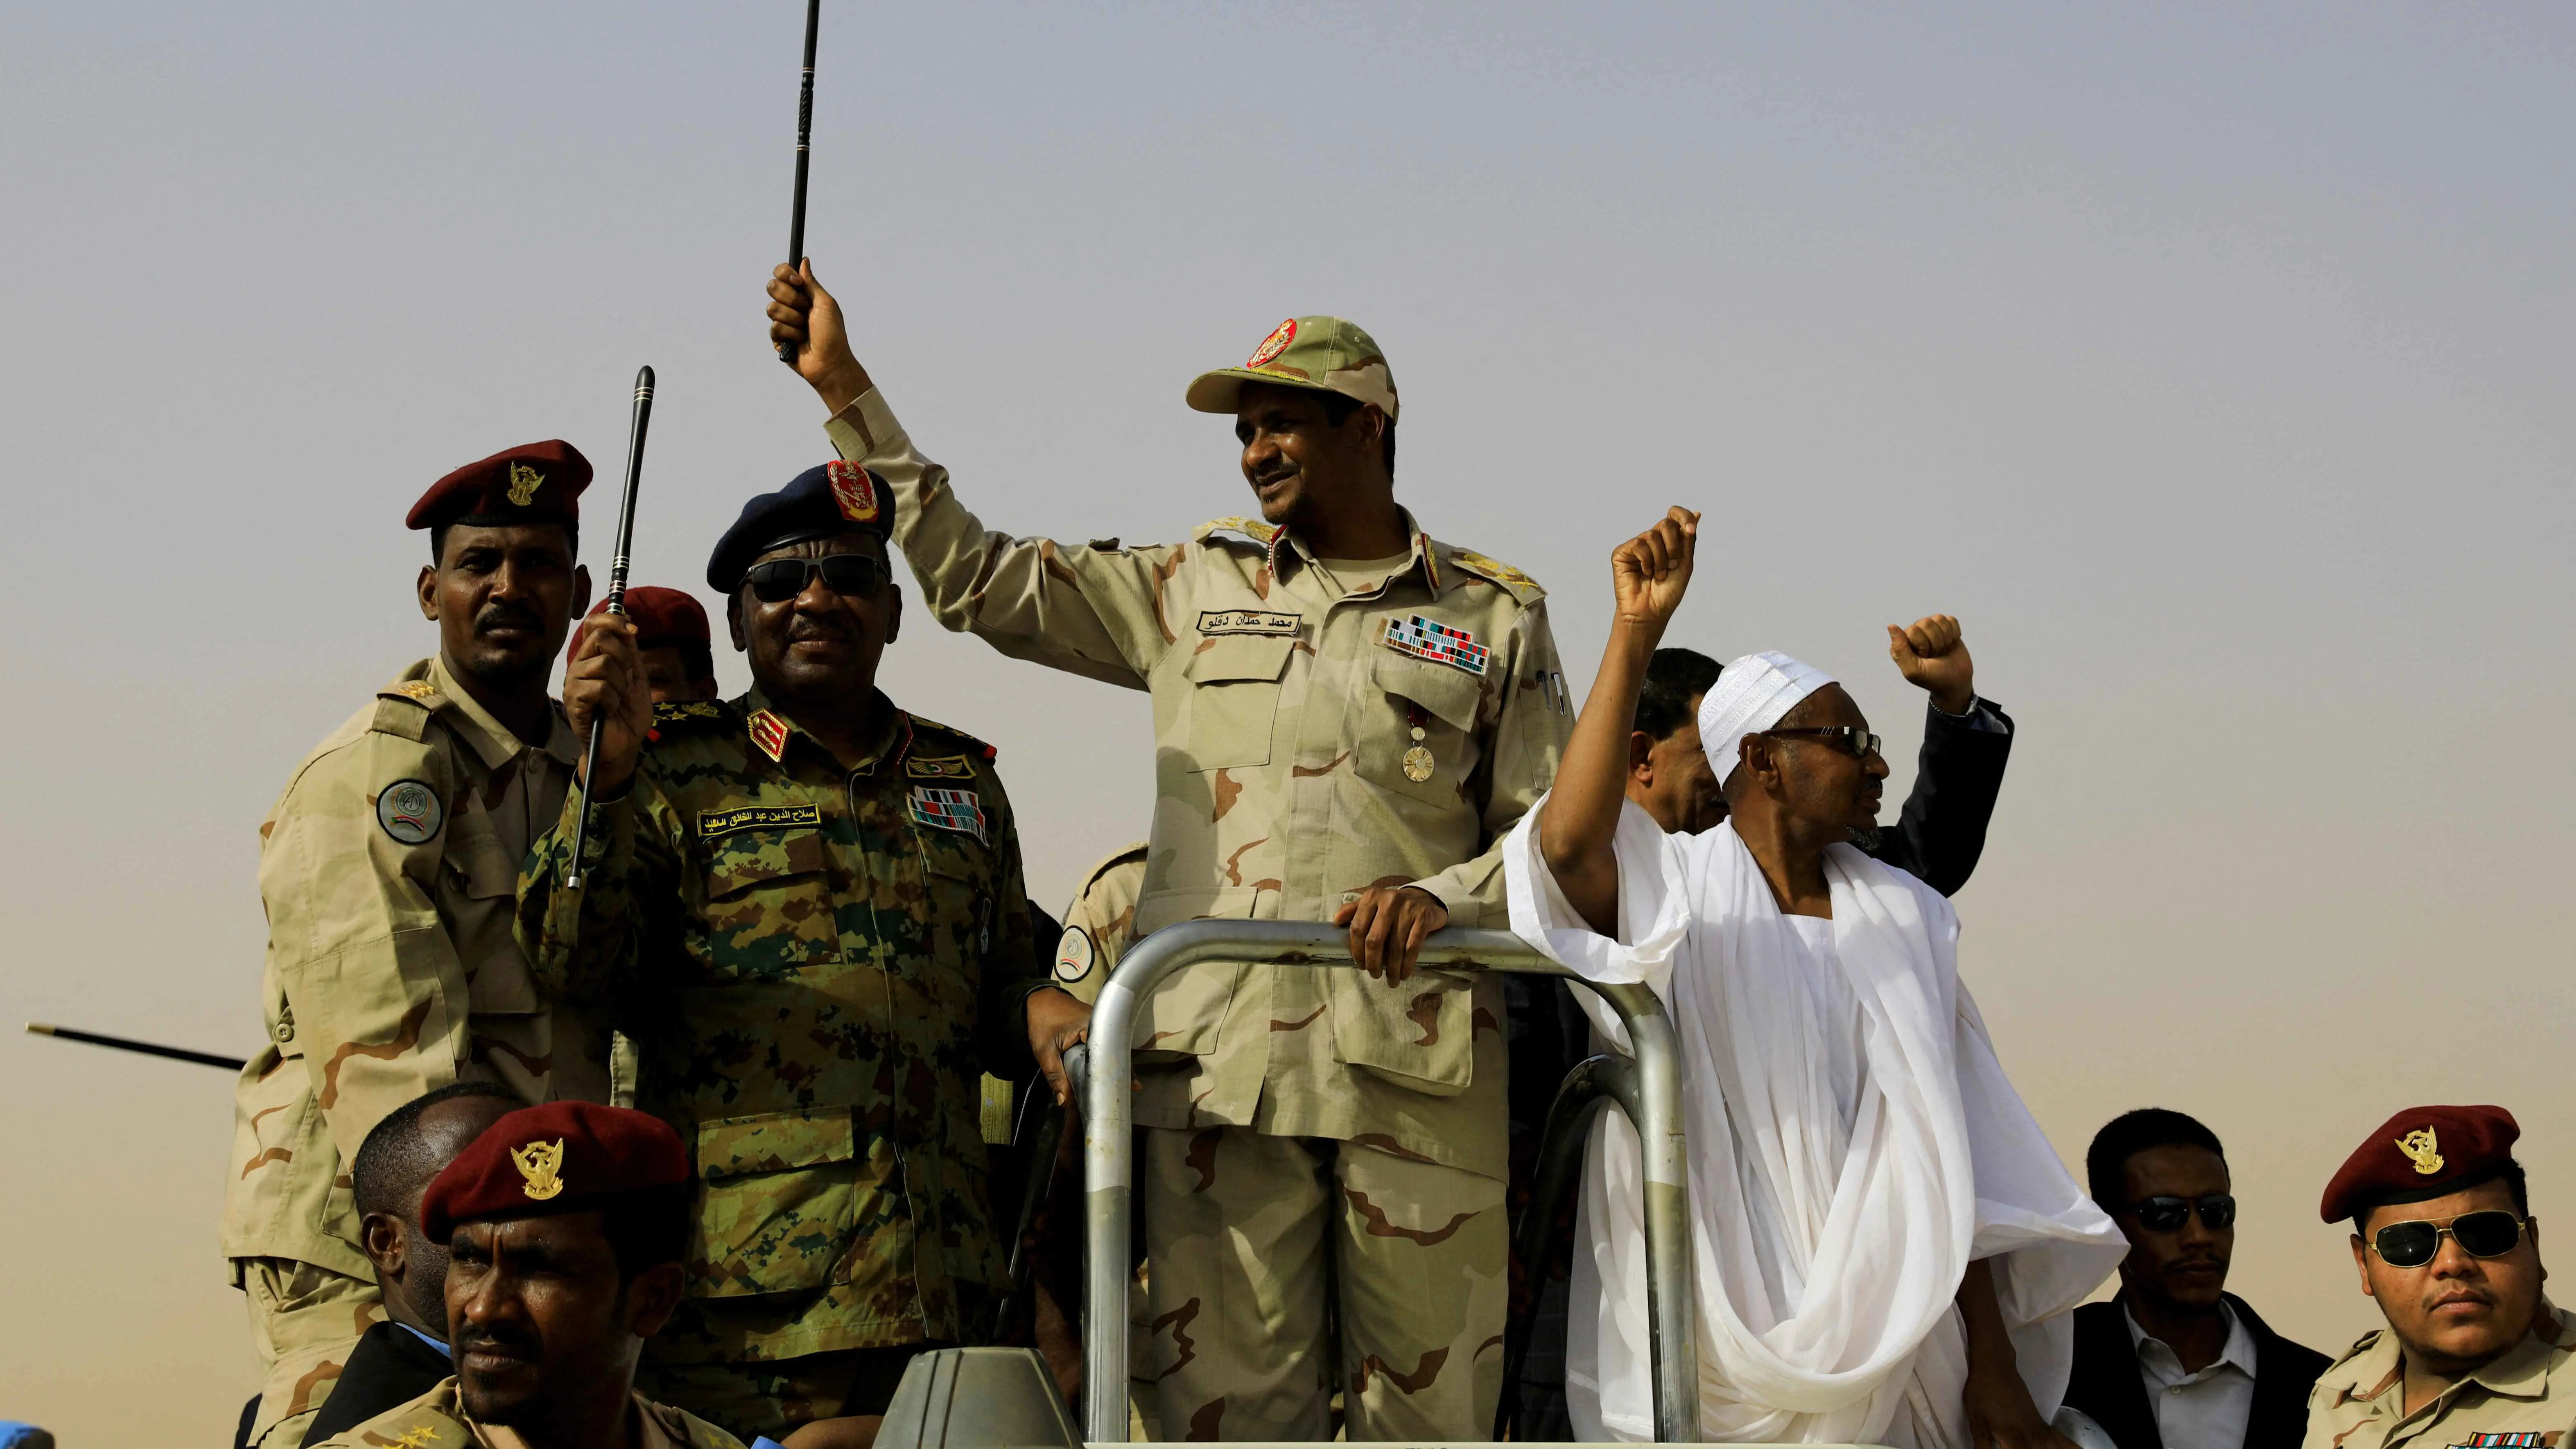 السودان.. "الدعم السريع" تشكل لجنة لحماية "المزموم" من هجمات الإسلاميين (فيديو)